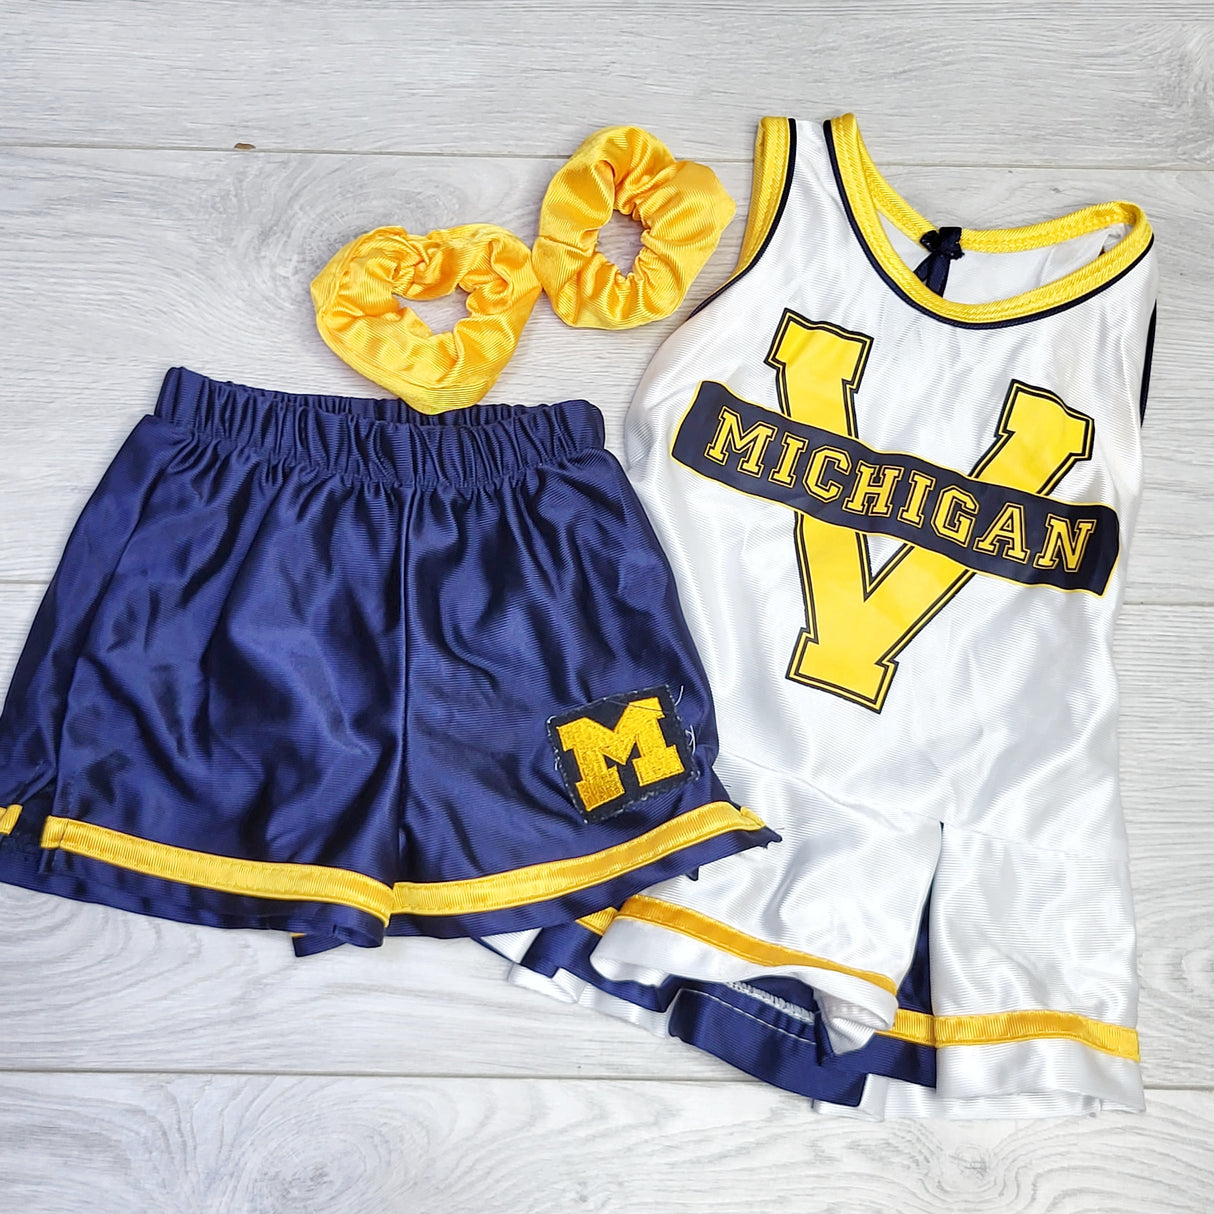 MSNDS2 - Michigan Cheerleader costume. Size 18 months